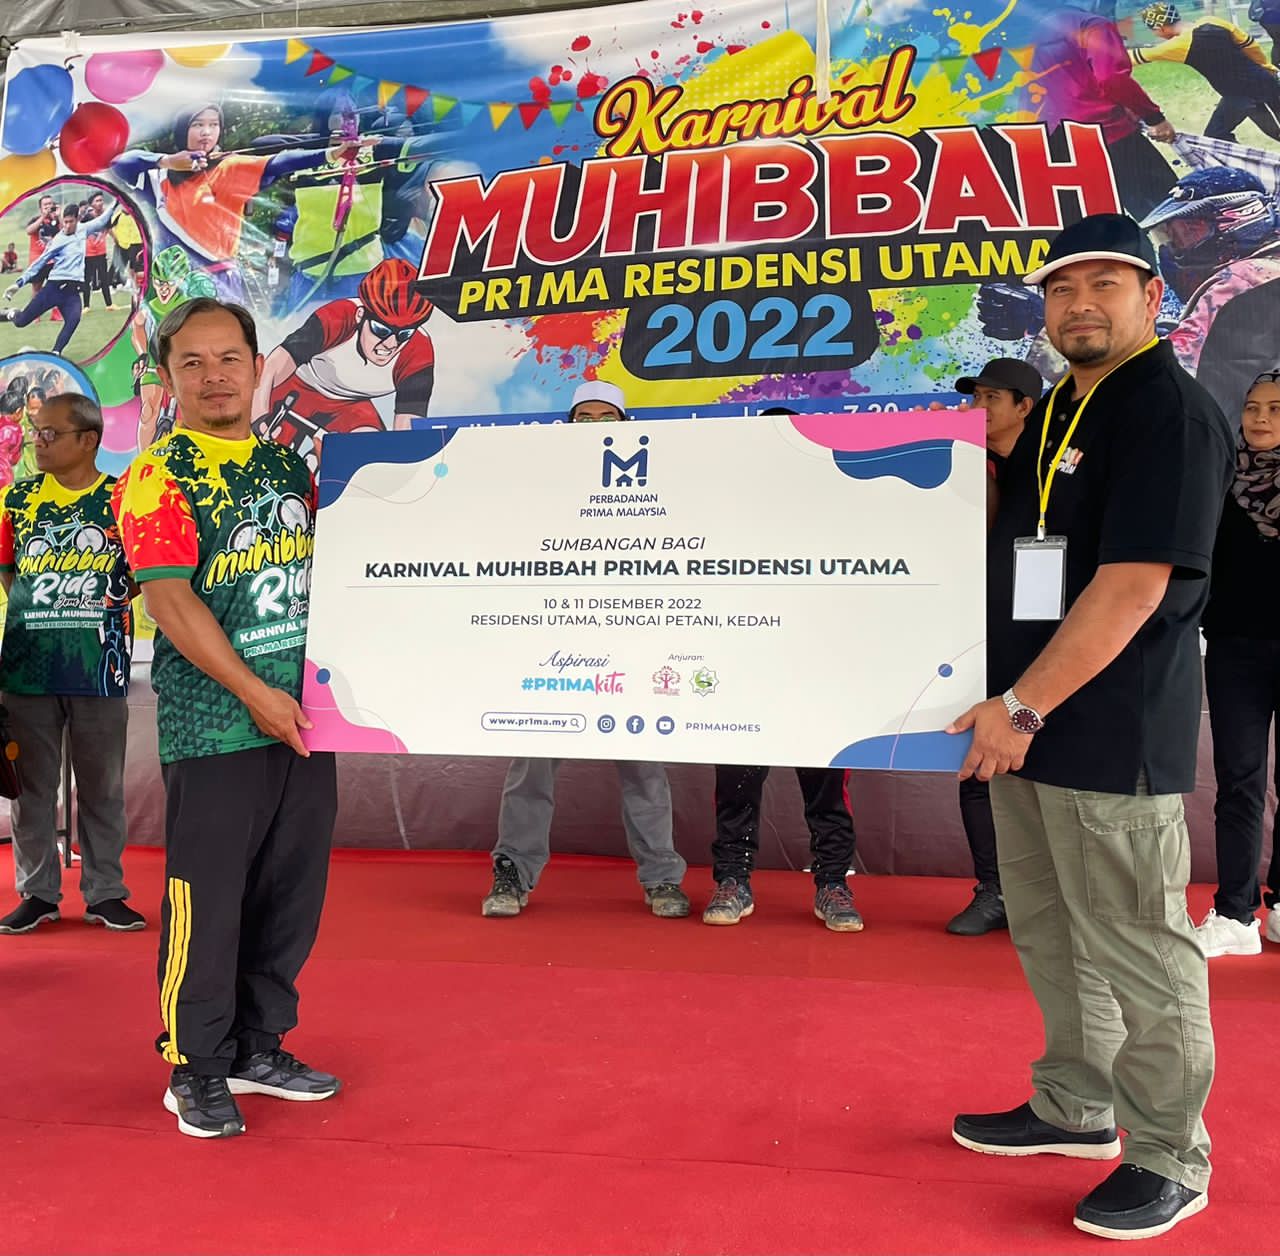 Cover image of Community Past Program: Surau Al-Falah and KRT PR1MA committees of Residensi Utama, Kedah held their annual Muhibbah Carnival with the locals.